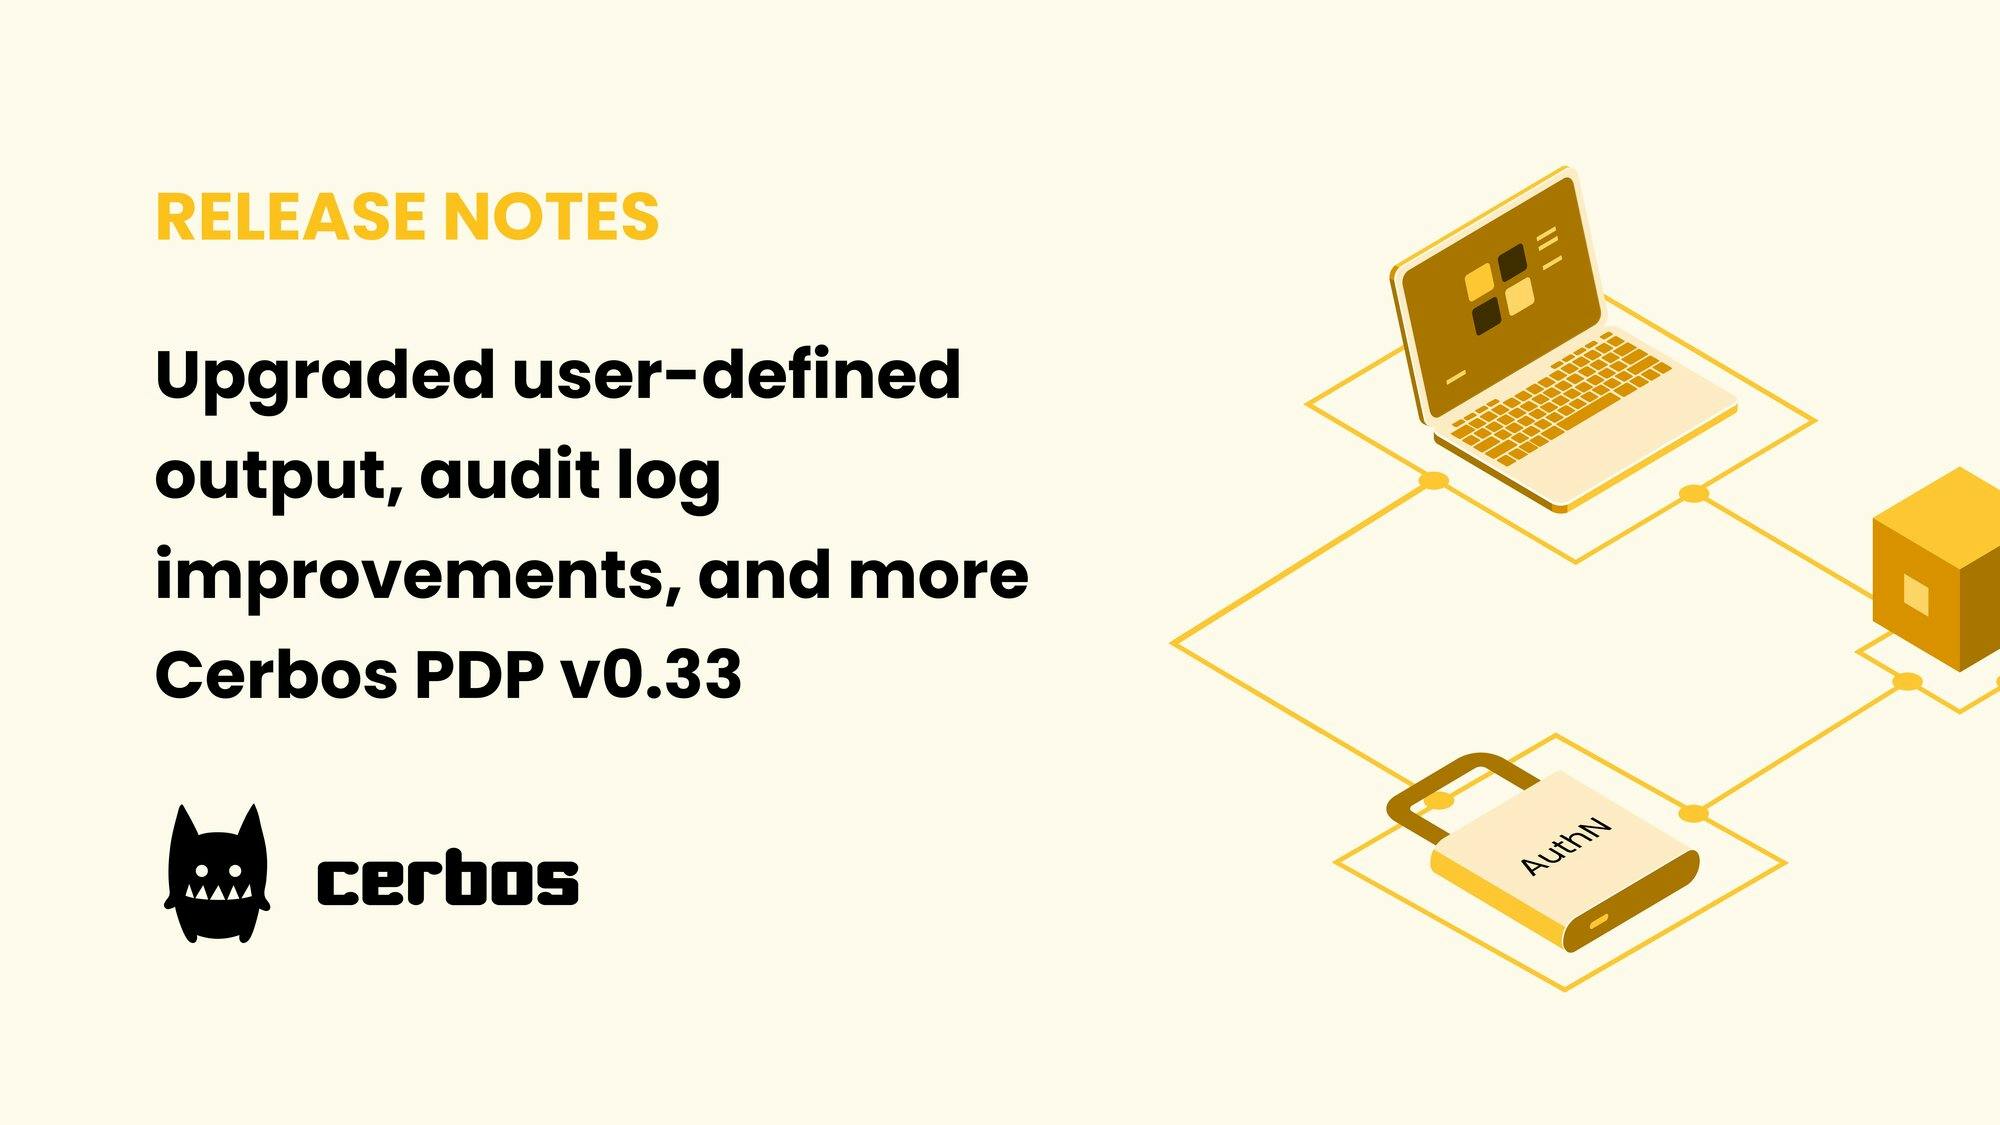 Upgraded user-defined output, audit log improvements, and more - Cerbos PDP v0.33